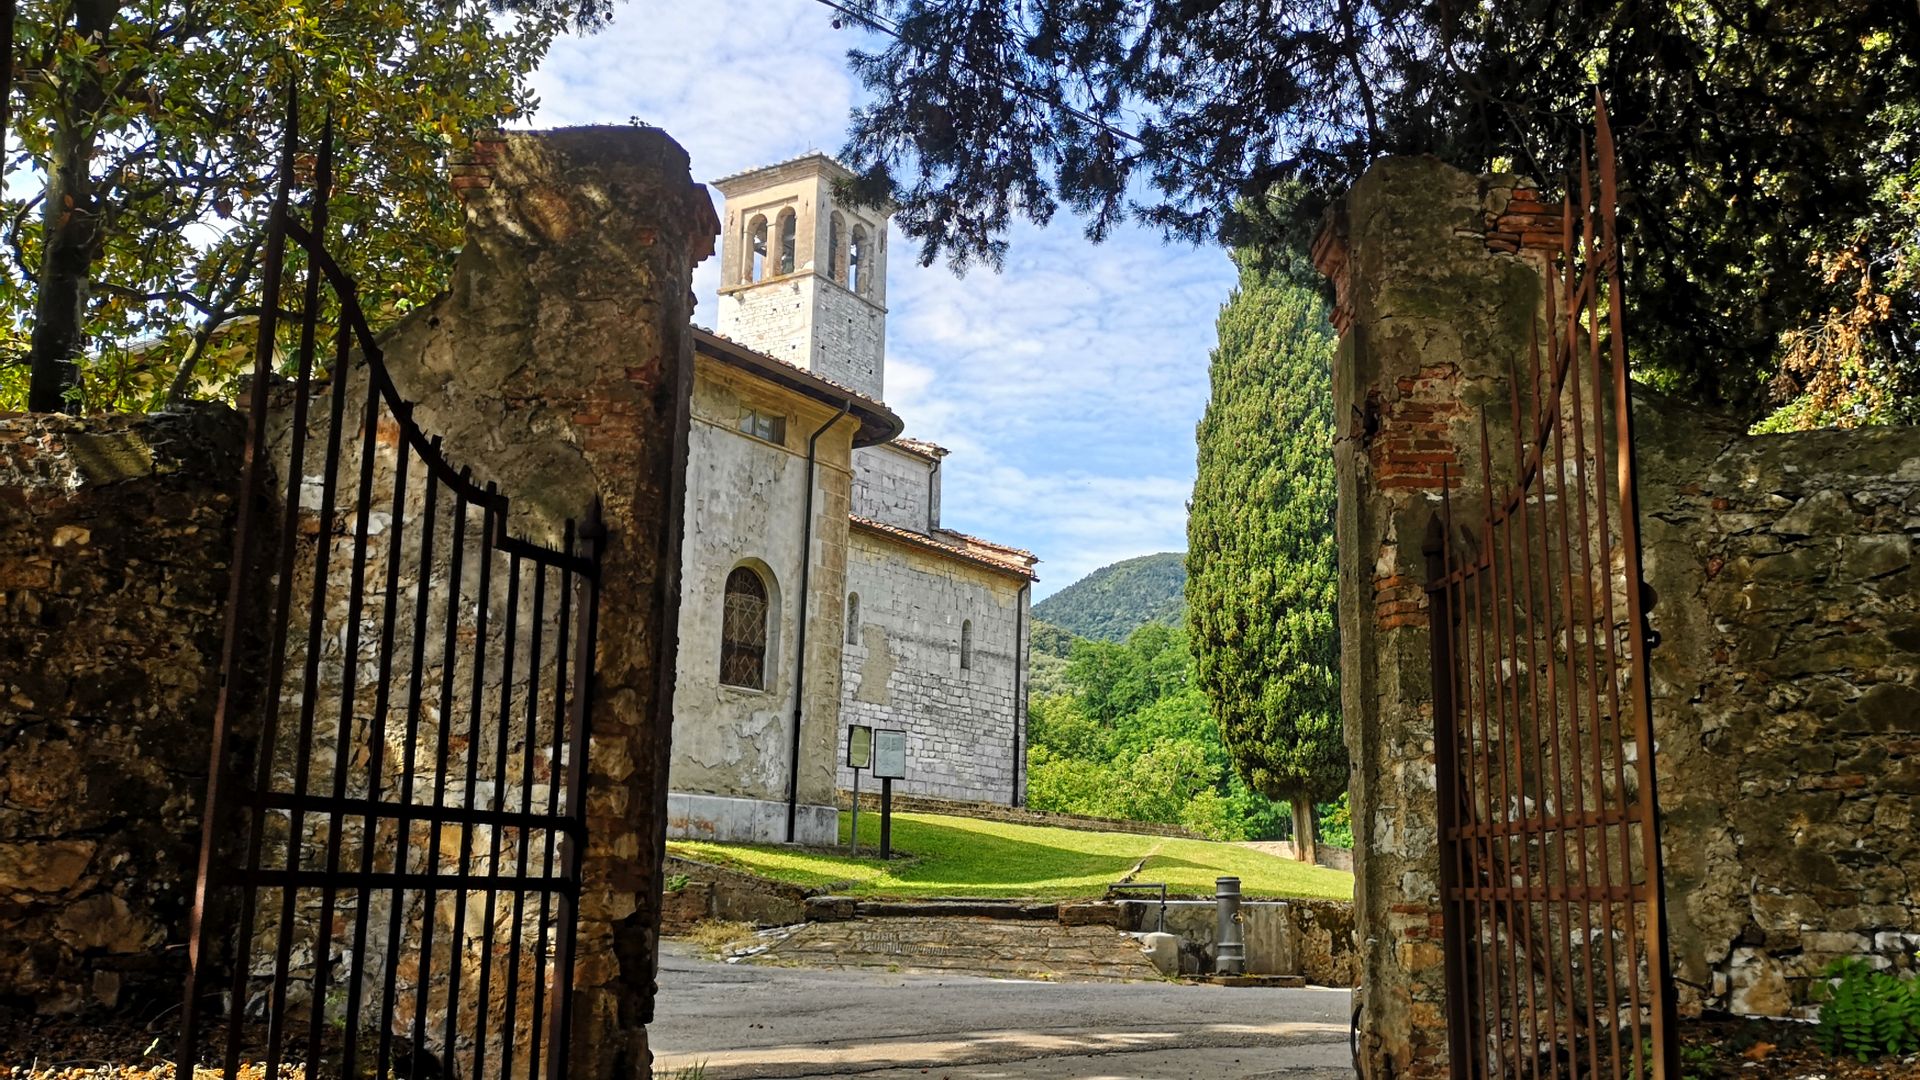 a walk to the parish church of Gattaiola